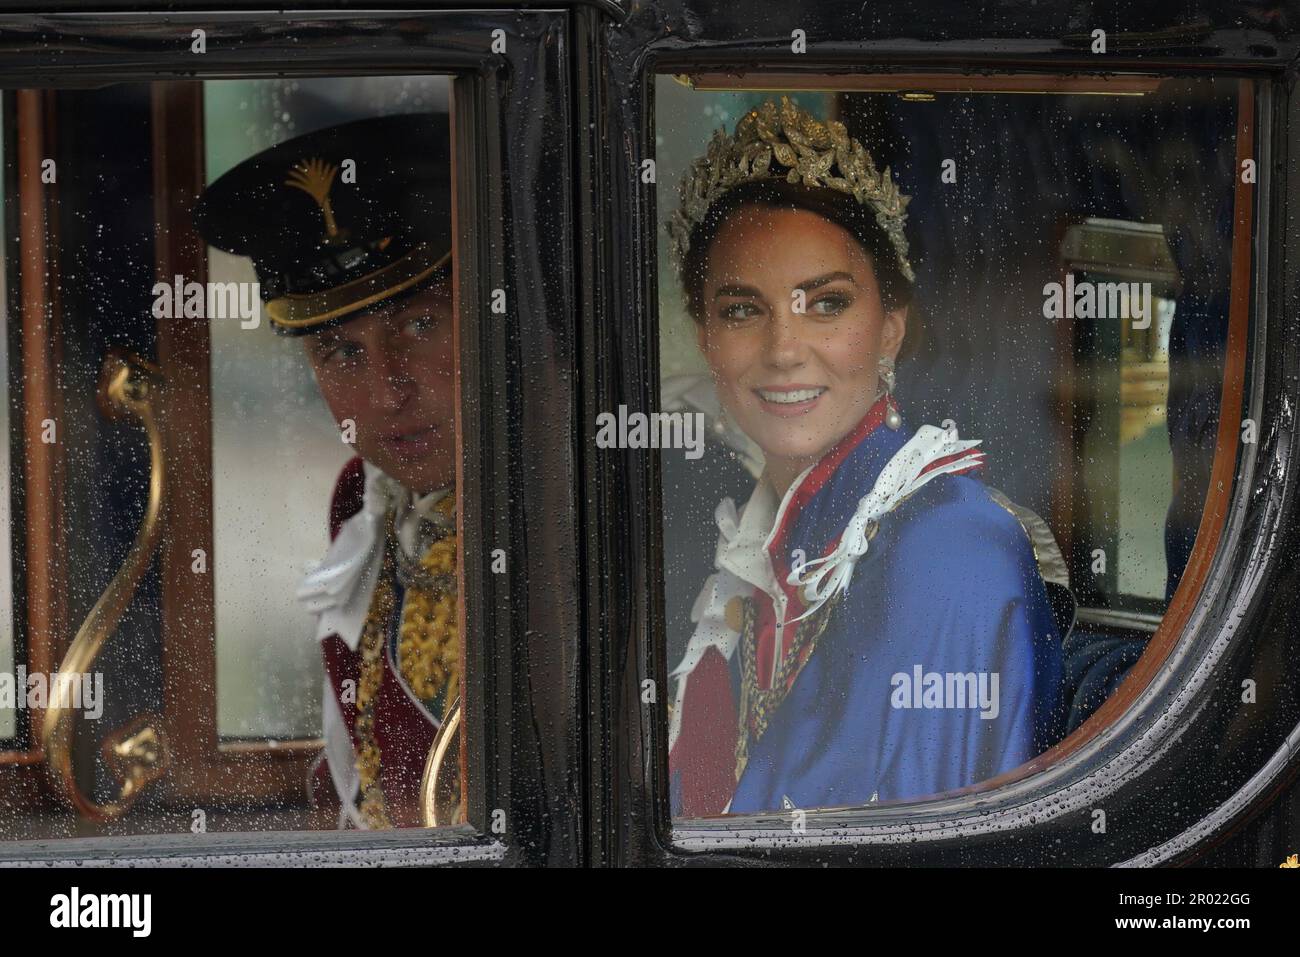 Il Principe e la Principessa di Galles ritornano a Buckingham Palace in pullman dopo la cerimonia di incoronazione del Re Carlo III e della Regina Camilla nel centro di Londra. Data immagine: Sabato 6 maggio 2023. Foto Stock